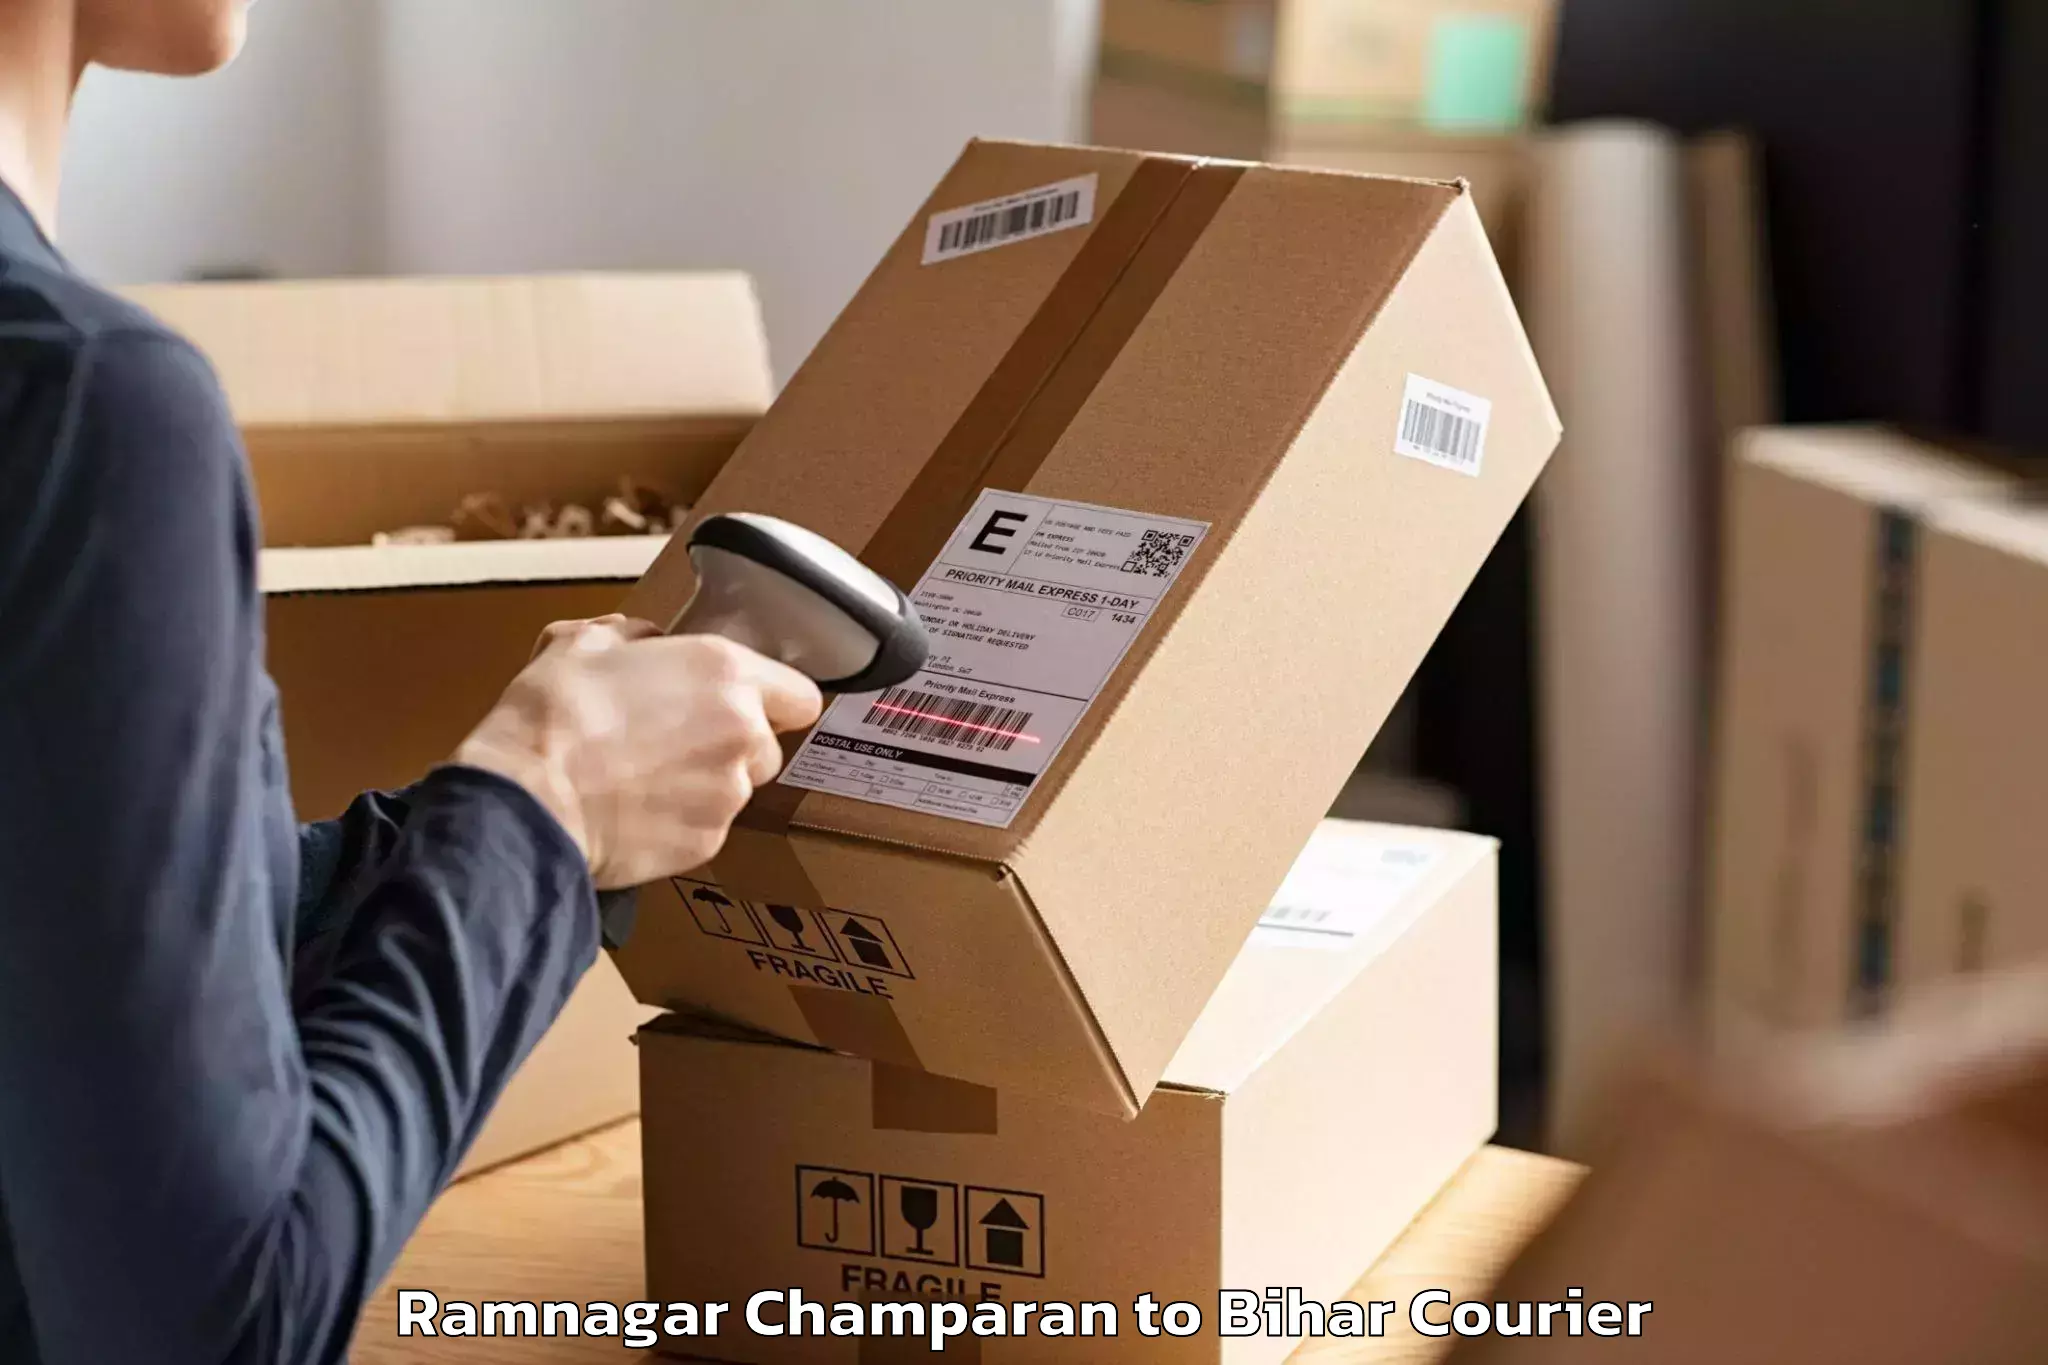 Professional packing services Ramnagar Champaran to Sonbarsa